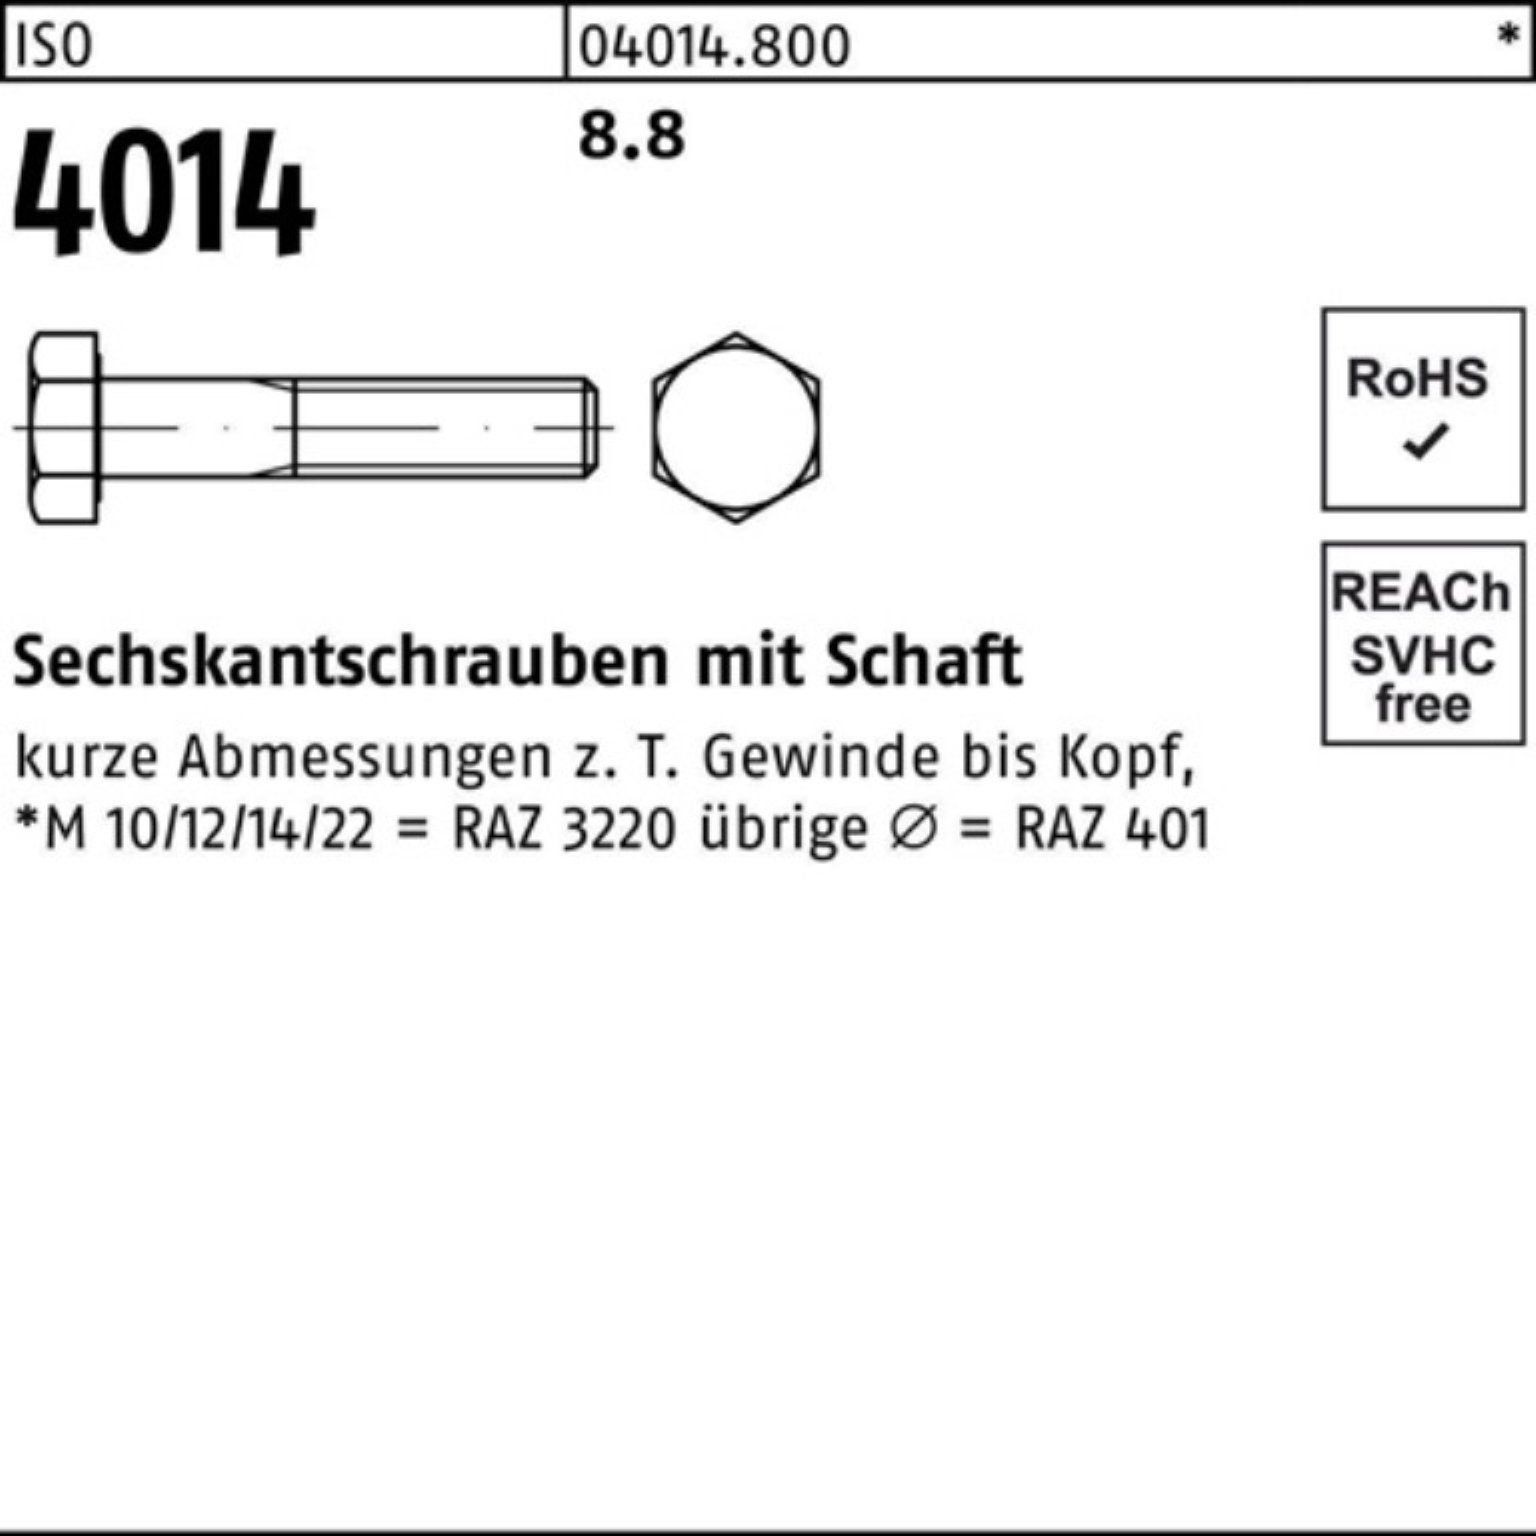 Schaft 450 ISO Sechskantschraube ISO Pack 100er 1 Bufab M24x 4014 Stück 8.8 Sechskantschraube